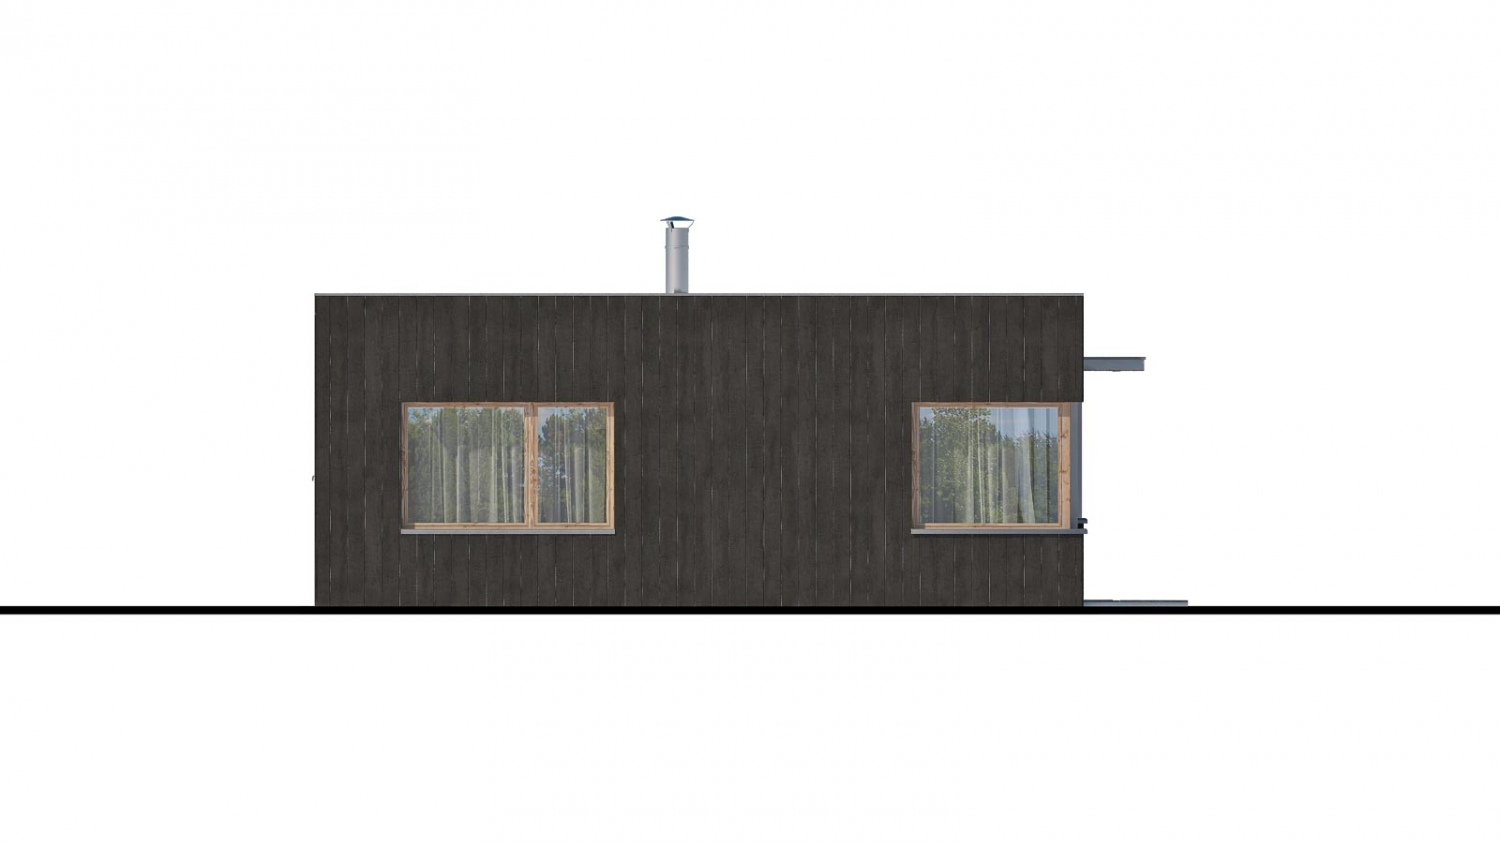 Moderný malý projekt rodinného domu s plochou strechou na úzky pozemok. Na presvetlenie chodby slúži svetlík Velux.